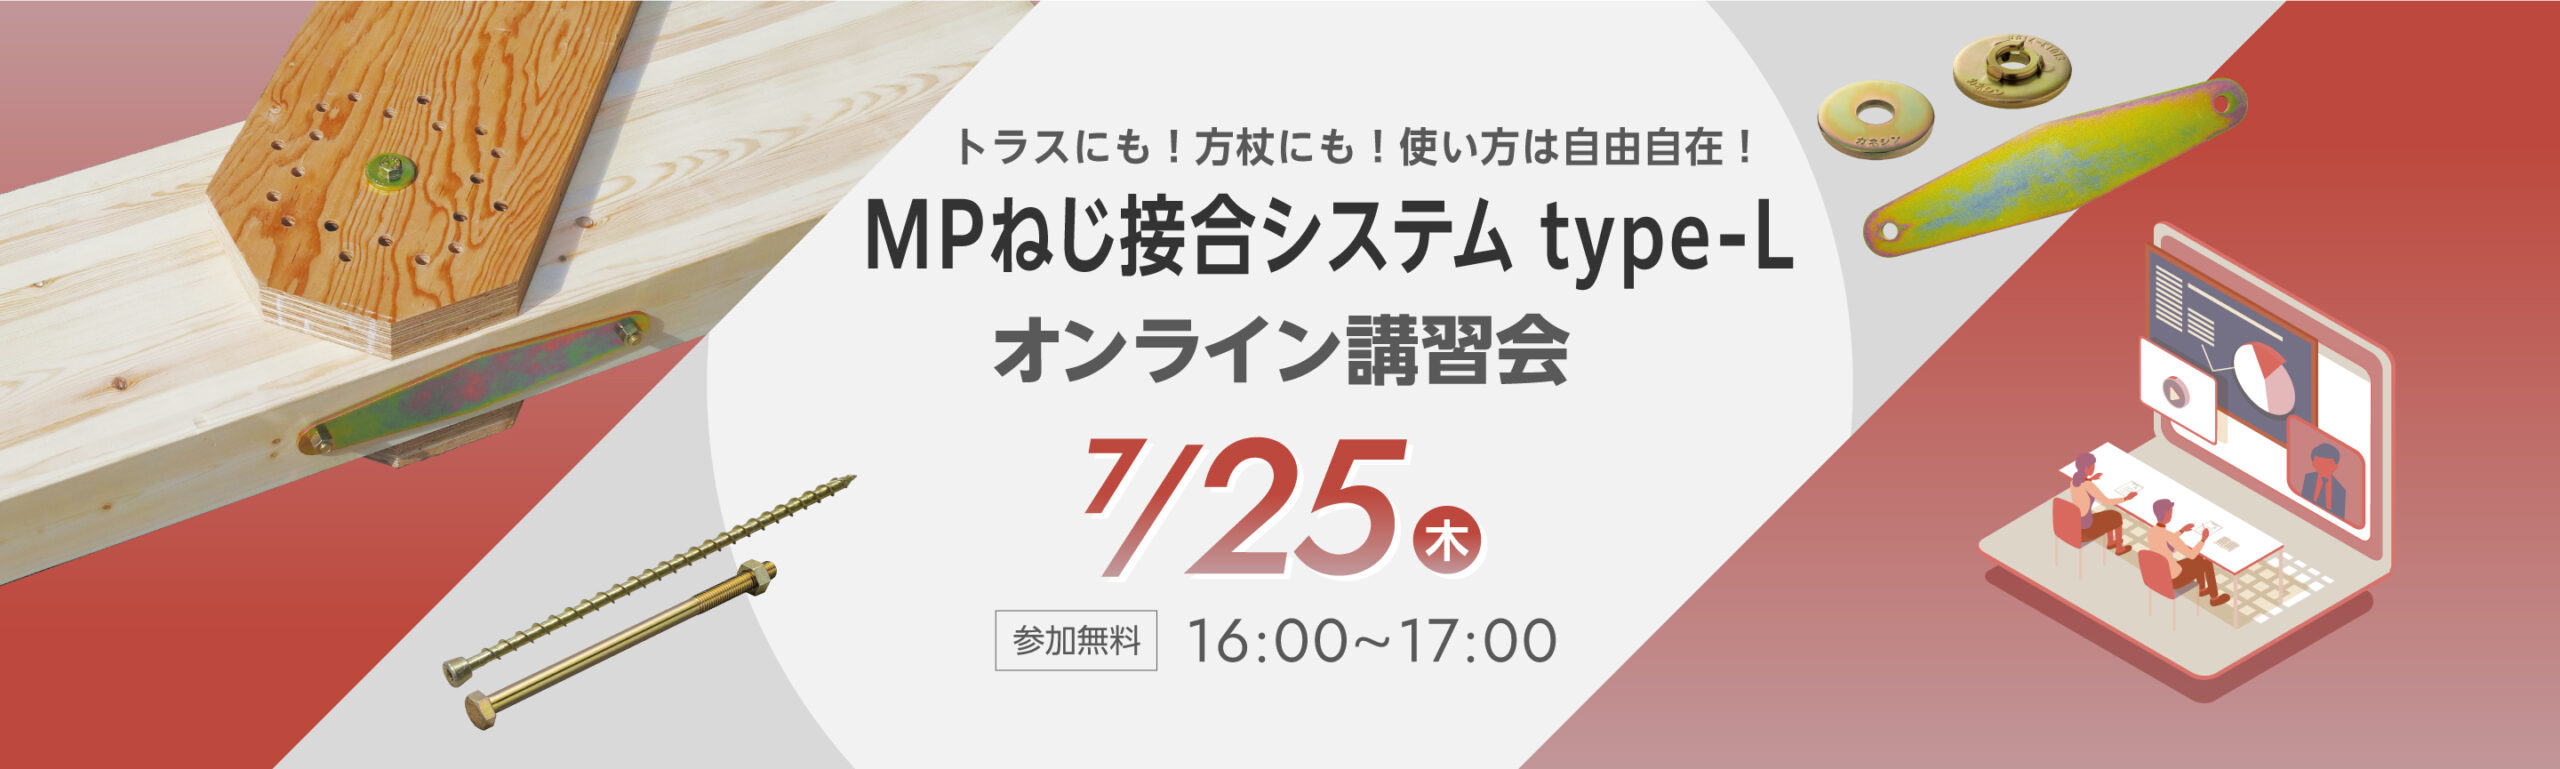 【7月25日開催】多雪地域でも使いやすい「MPねじ接合システム type-L」オンライン講習会